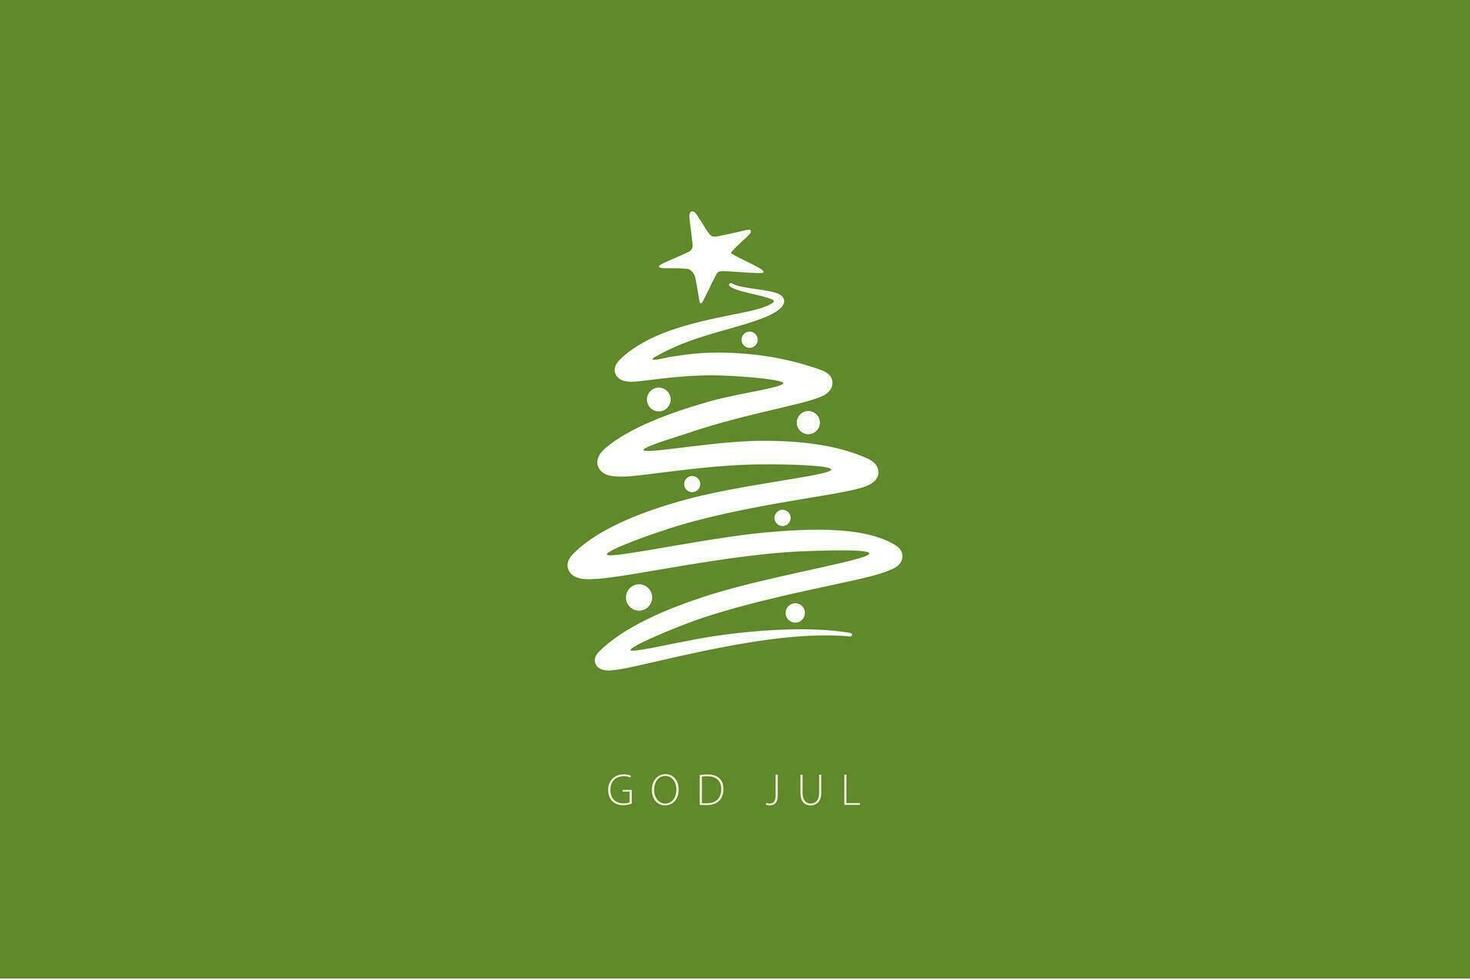 allegro Natale lettering nel svedese - Dio luglio - con Natale albero. Natale carta modello vettore